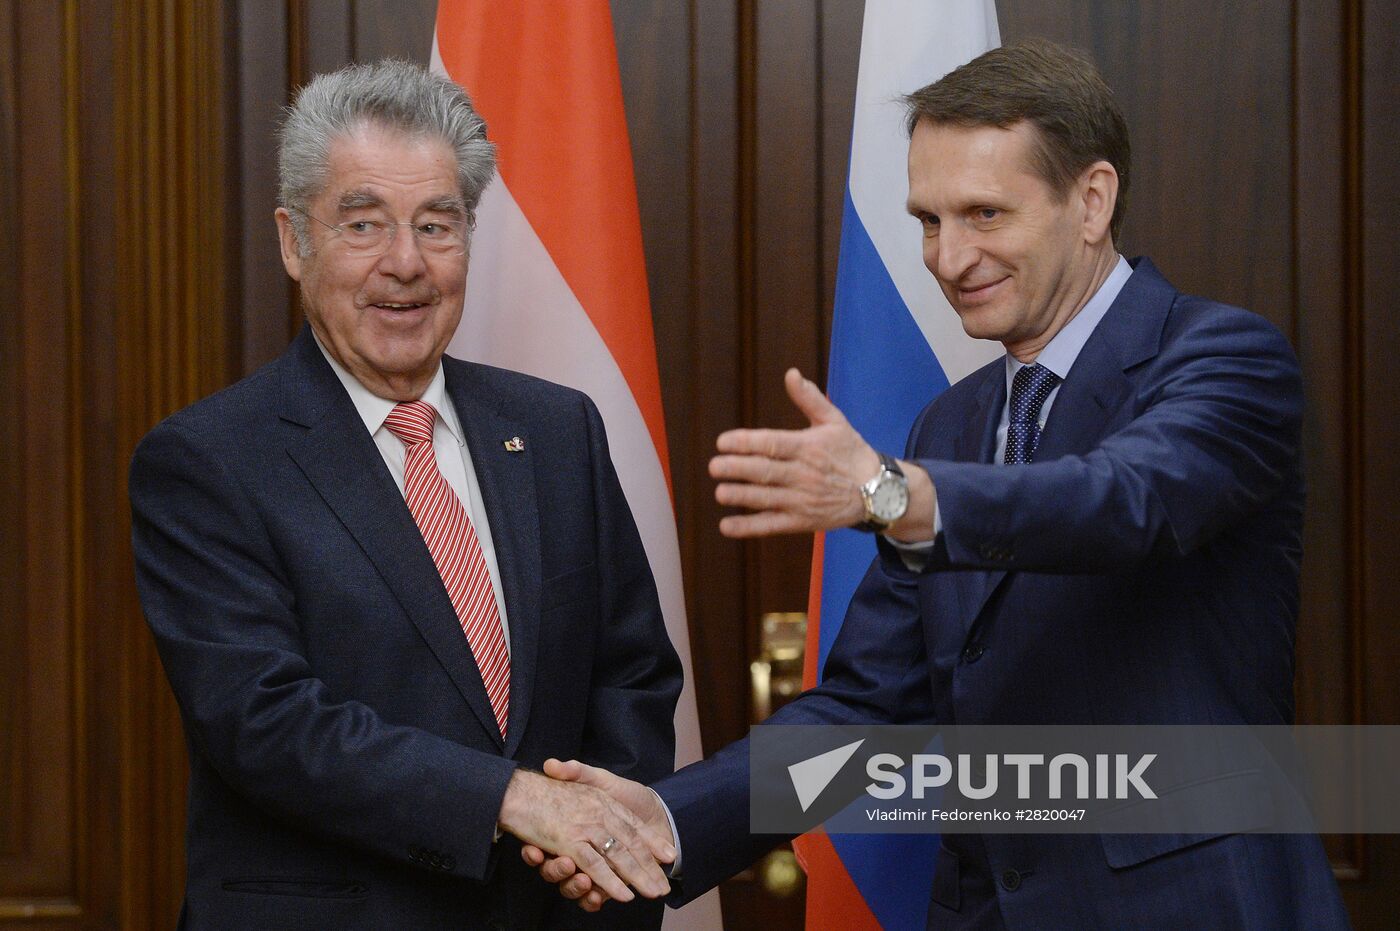 State Duma Speaker Sergei Naryshkin meets with Austrian President Heinz Fischer